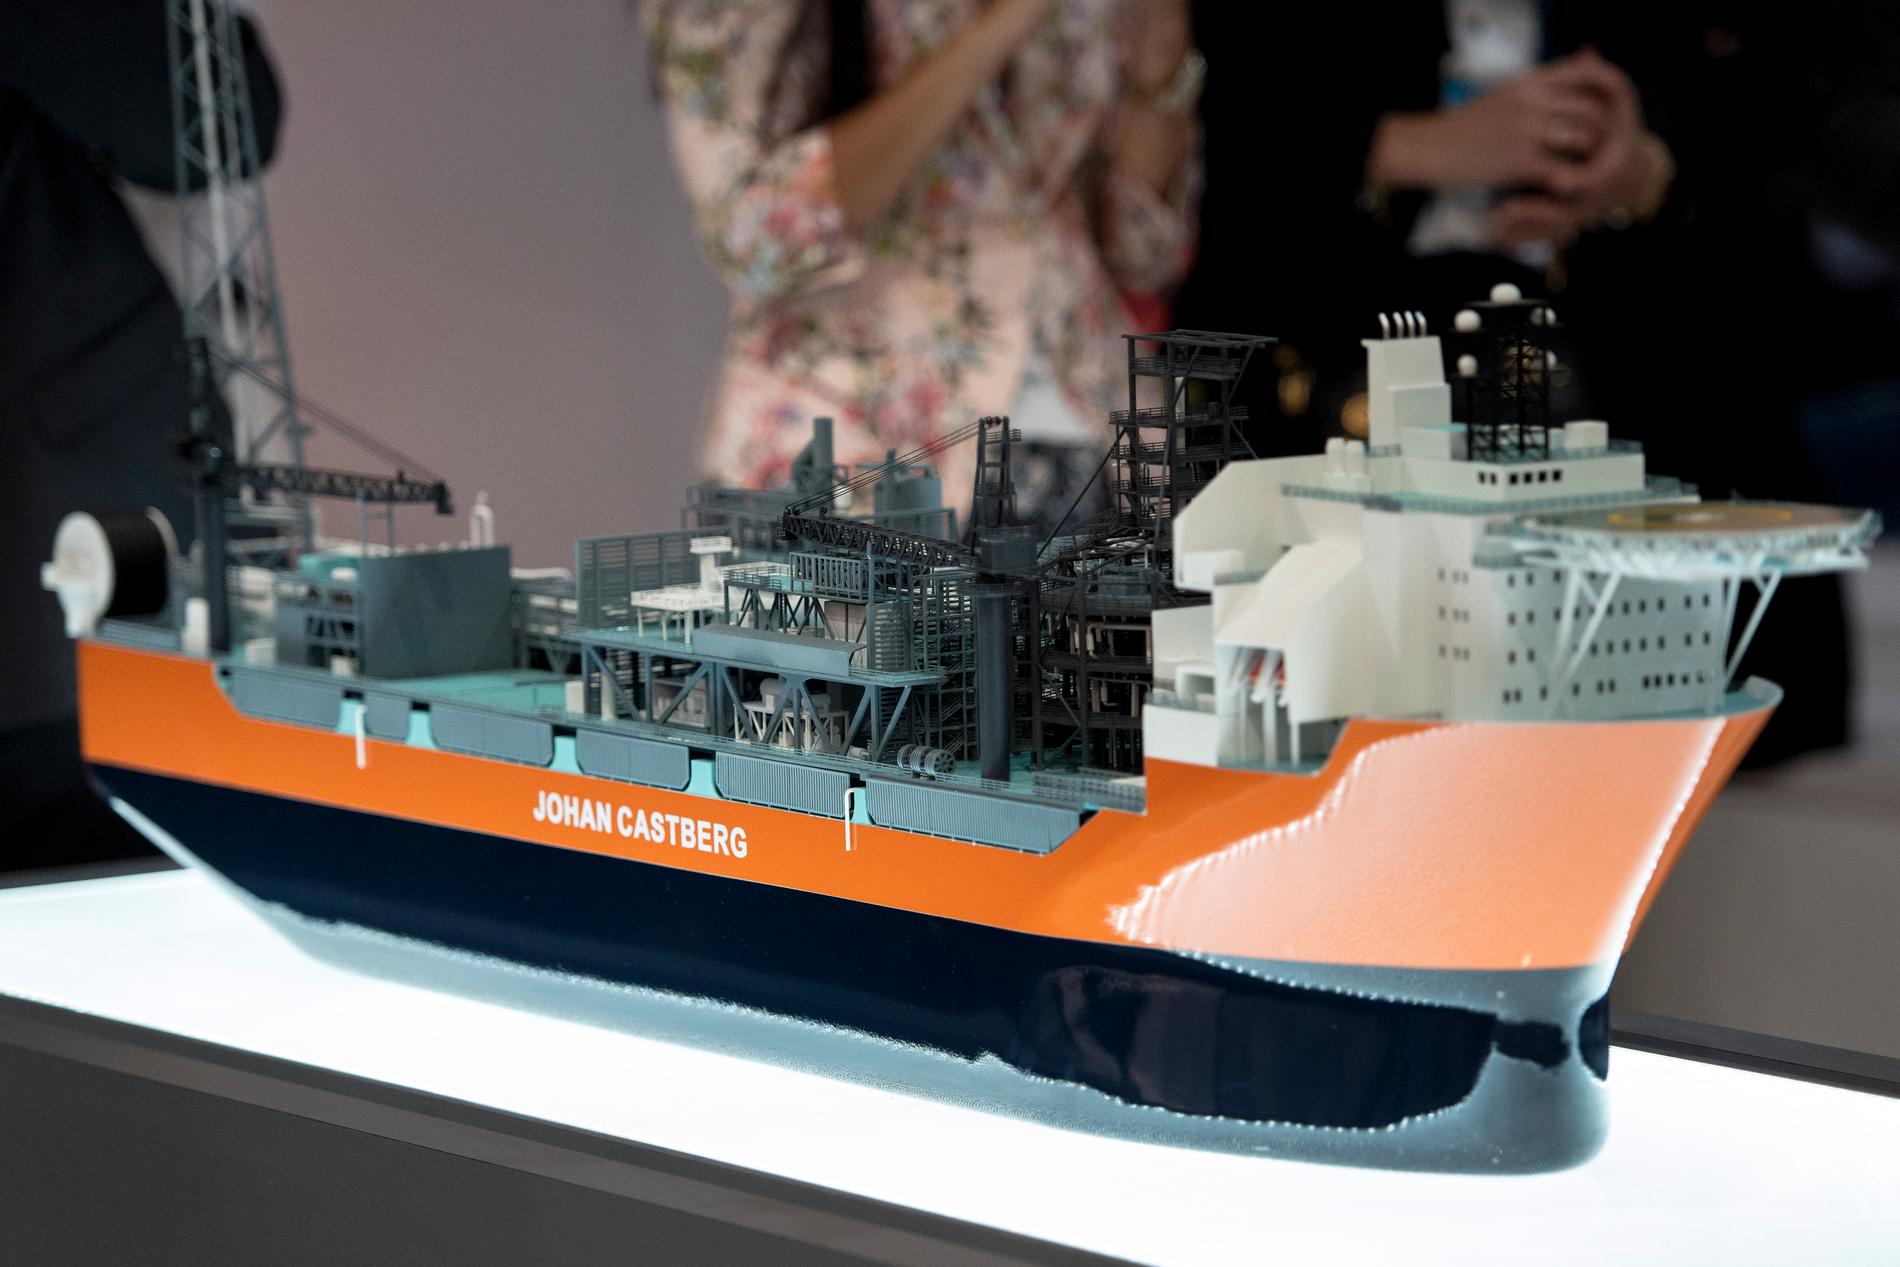 En modell av fartyget Johan Castberg, när det presenterades 2016. Arkivbild.